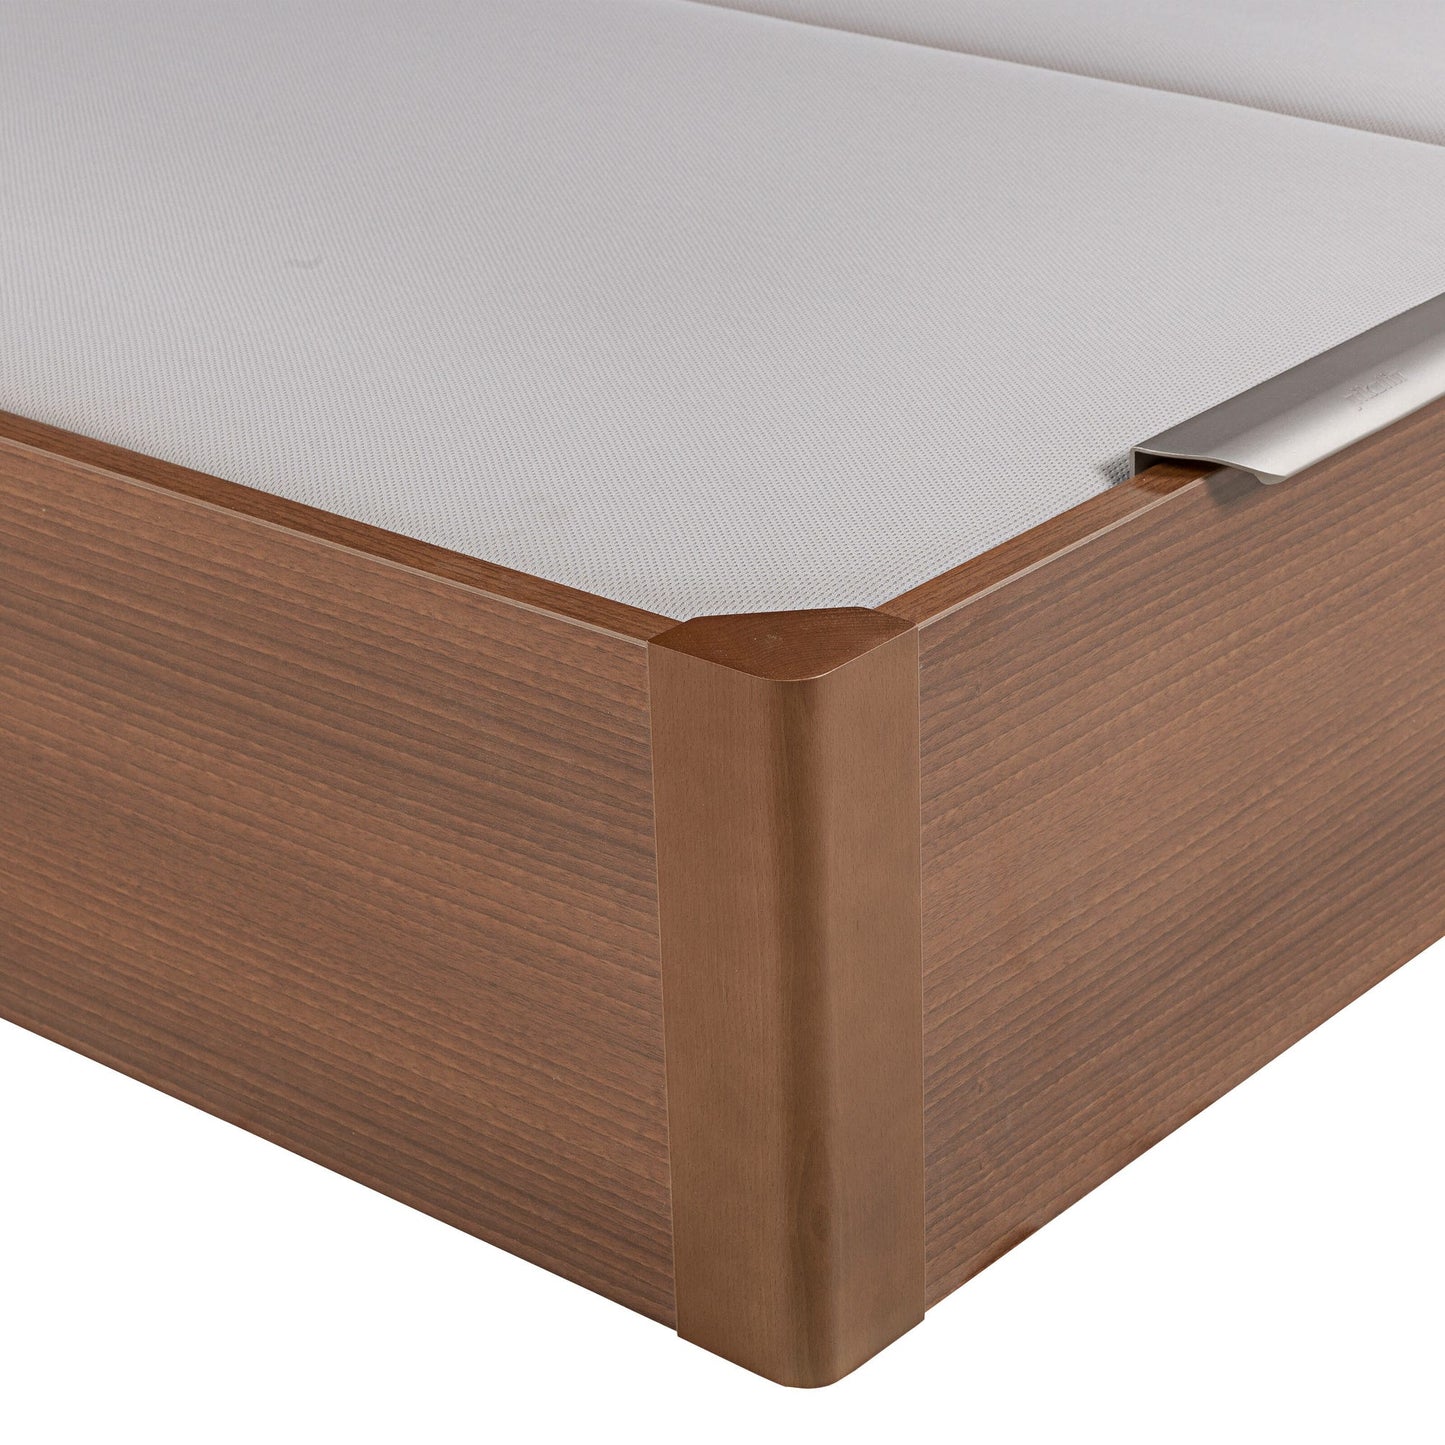 Canapé abatible de madera de tapa doble de color cerezo - DESIGN - 200x190